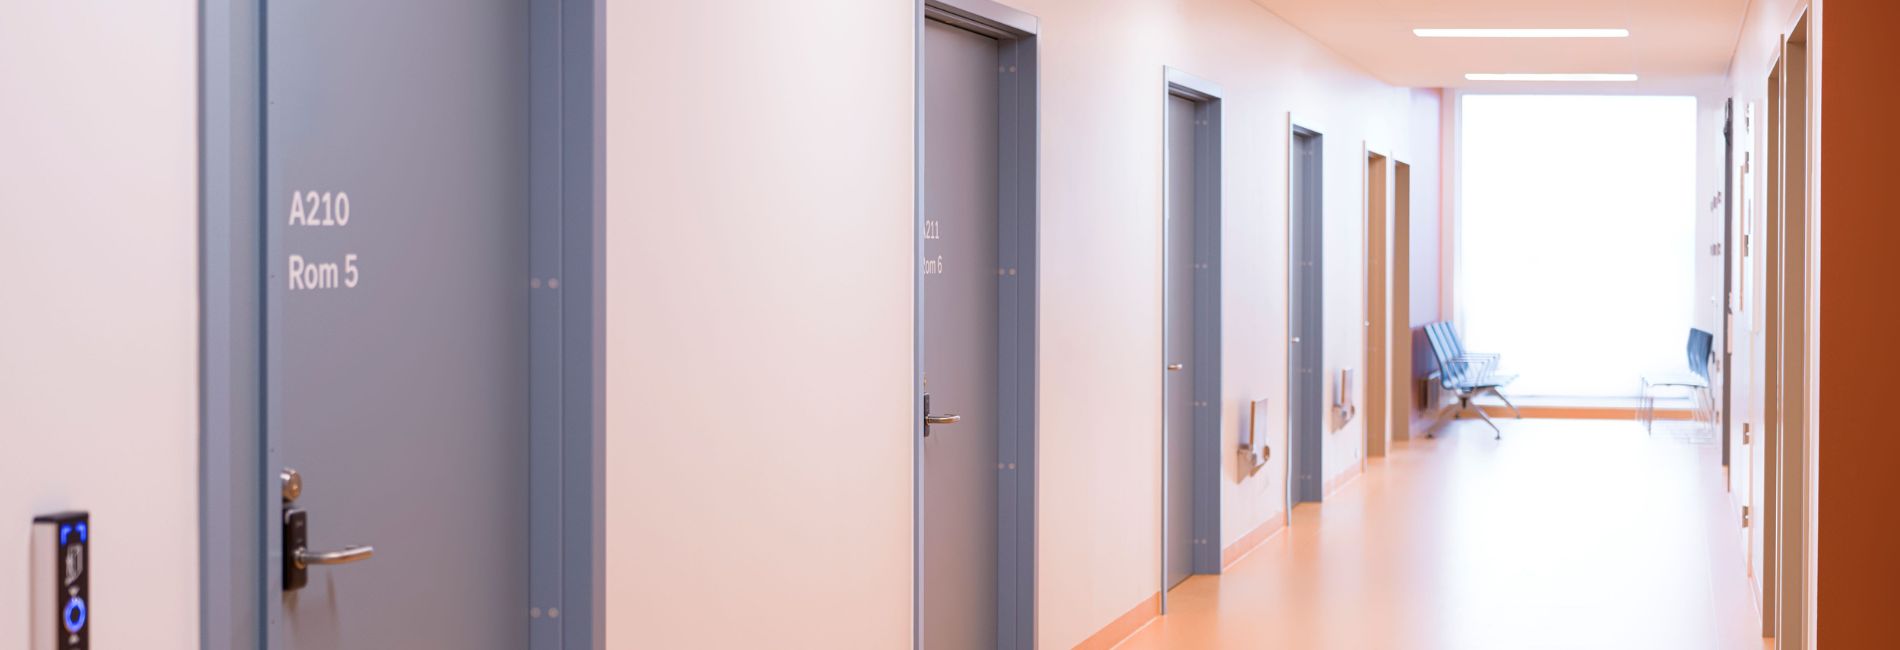 Nordic Door Healthcare 1900x700